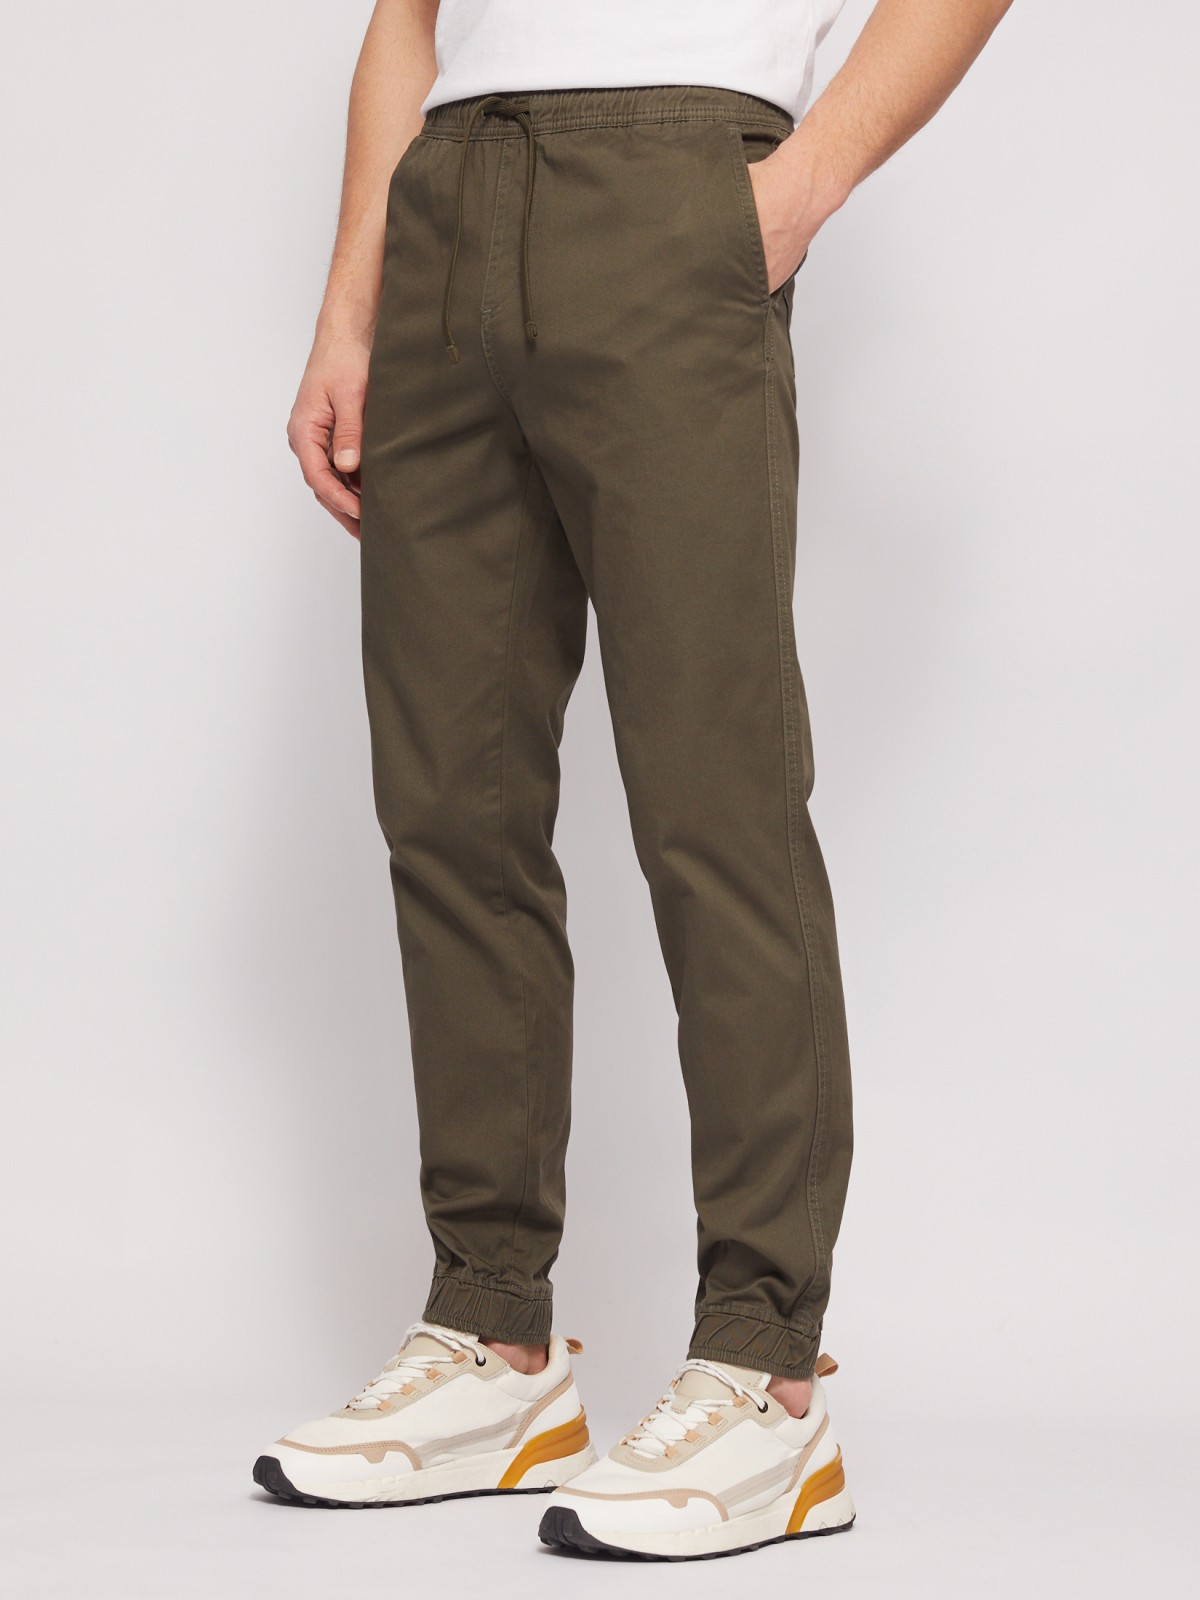 Прямые брюки-джоггеры из хлопка на резинке zolla N1421730L012, цвет хаки, размер 28 - фото 2